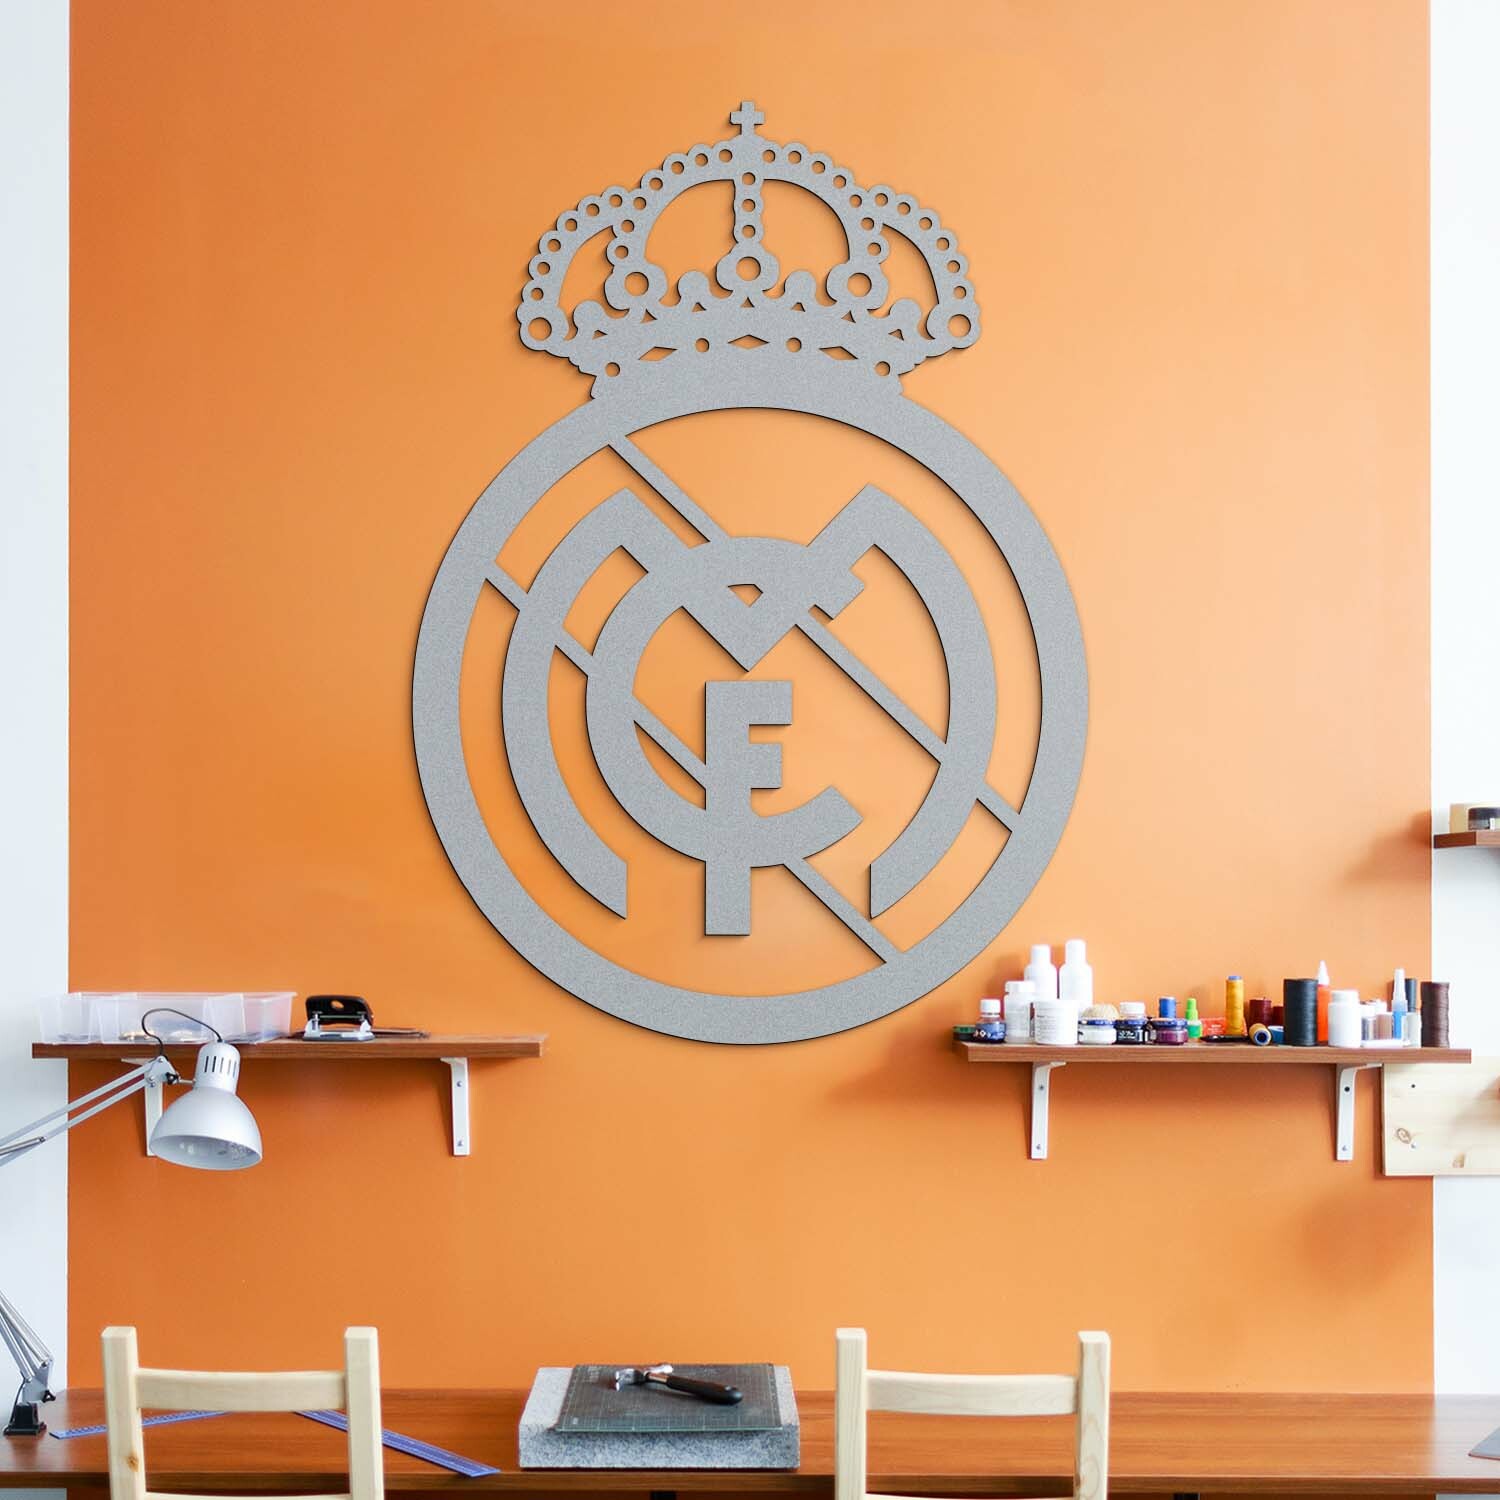 Drevená dekorácia na stenu - FC Real Madrid, Strieborná